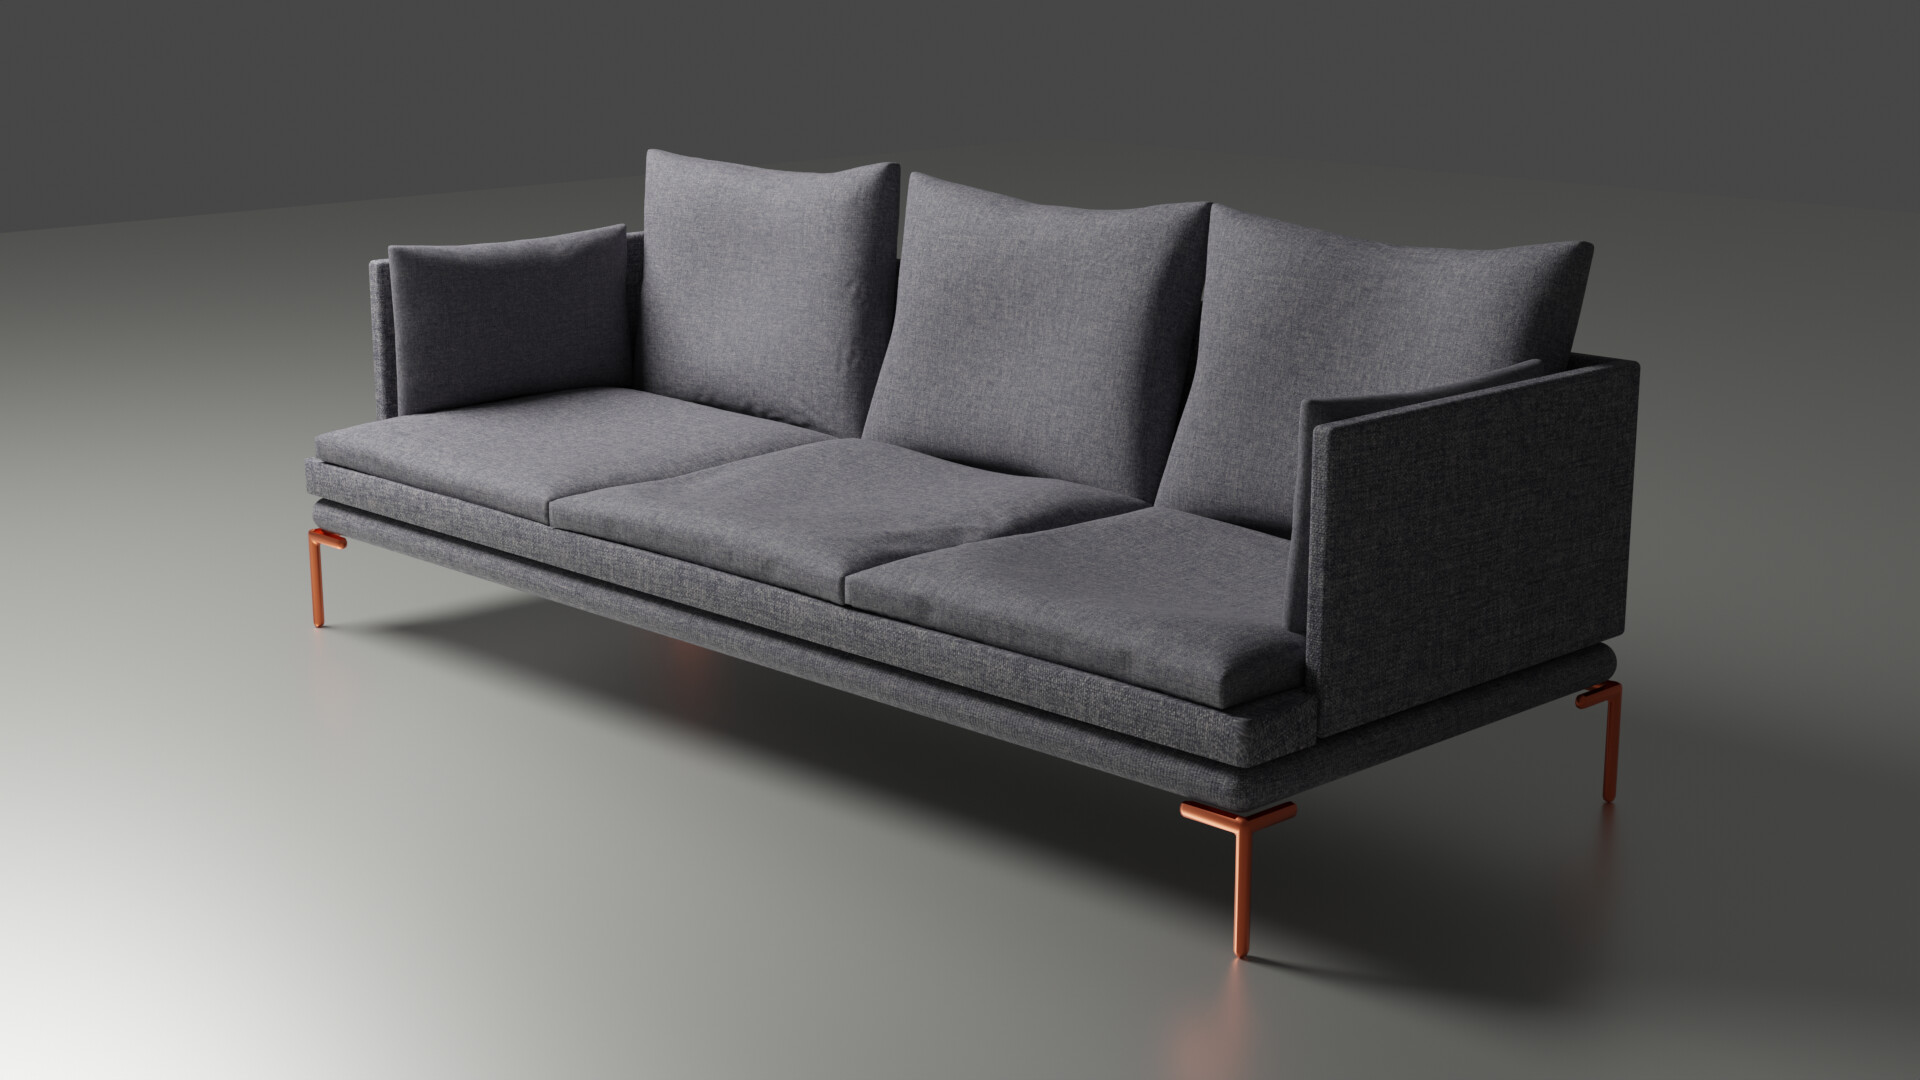 Kwaadaardige tumor woonadres Vermaken ArtStation - Modern Sofa